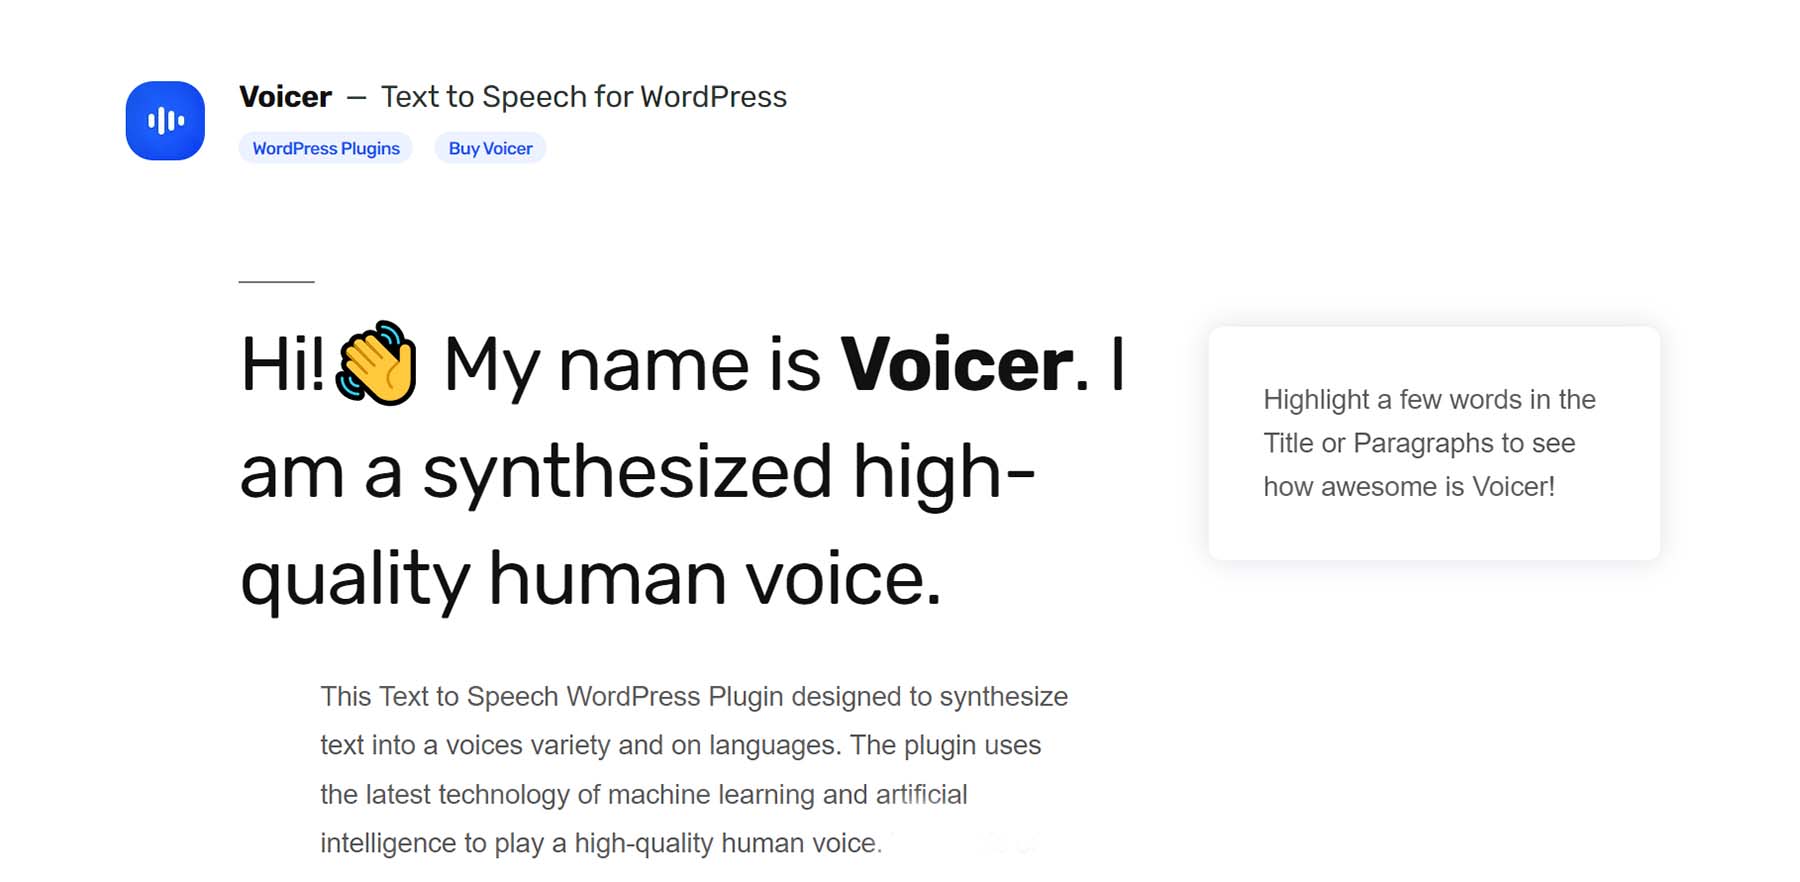 Voicer, text to speech via AI for WordPress